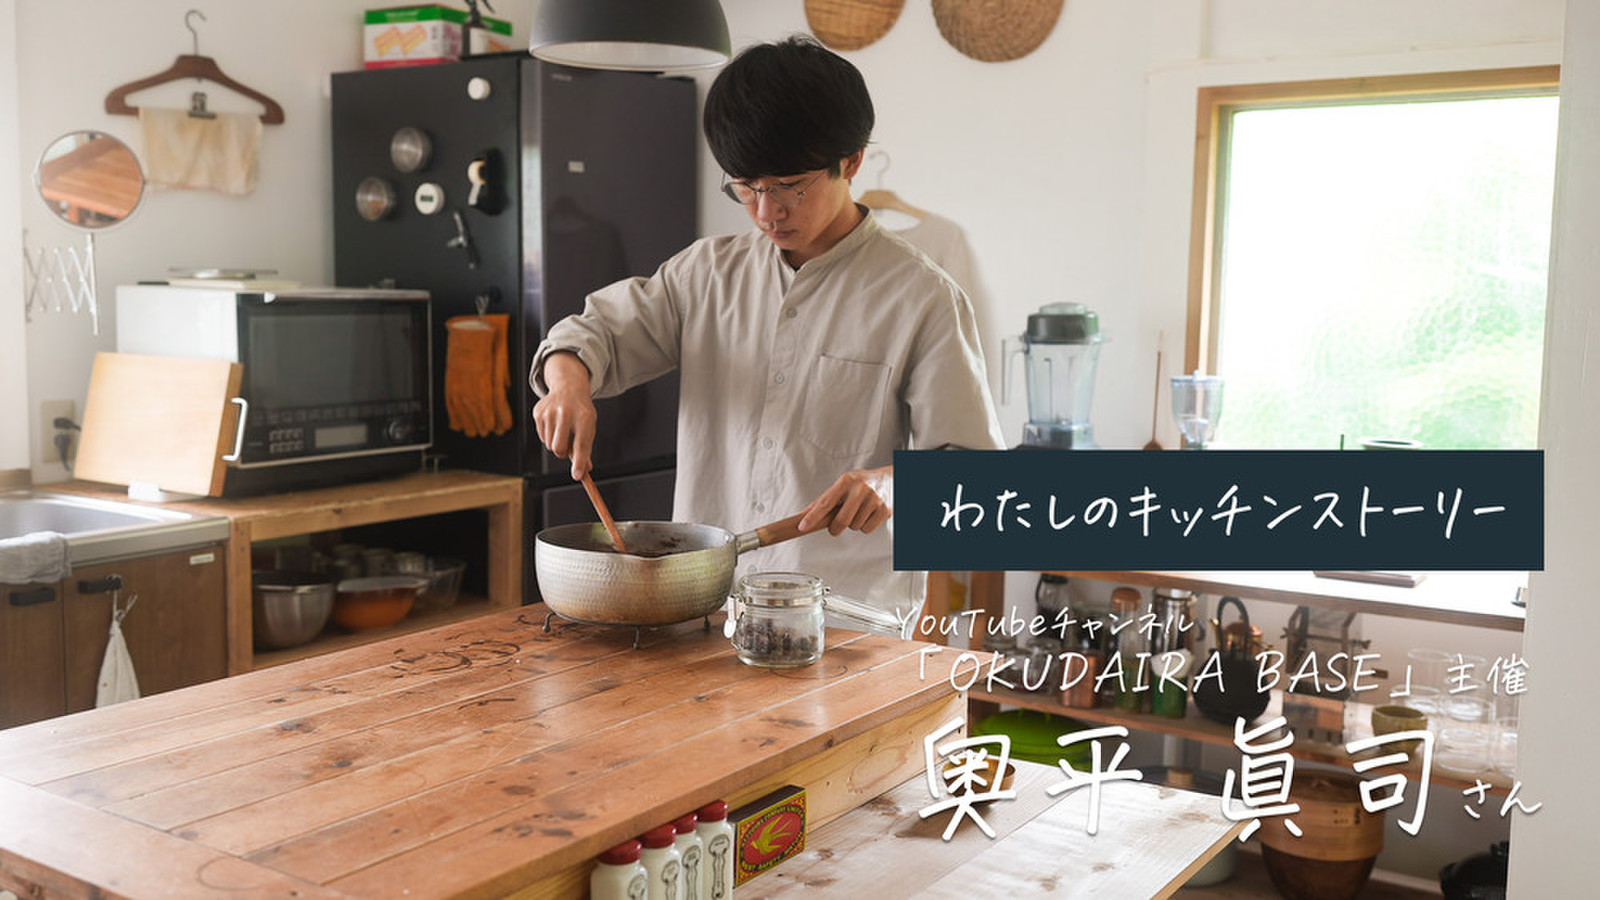 暮らし系Youtube「OKUDAIRA BASE」主催・奥平さんの “育てる” キッチン。足りないところは暮らしながら埋めていけばいい